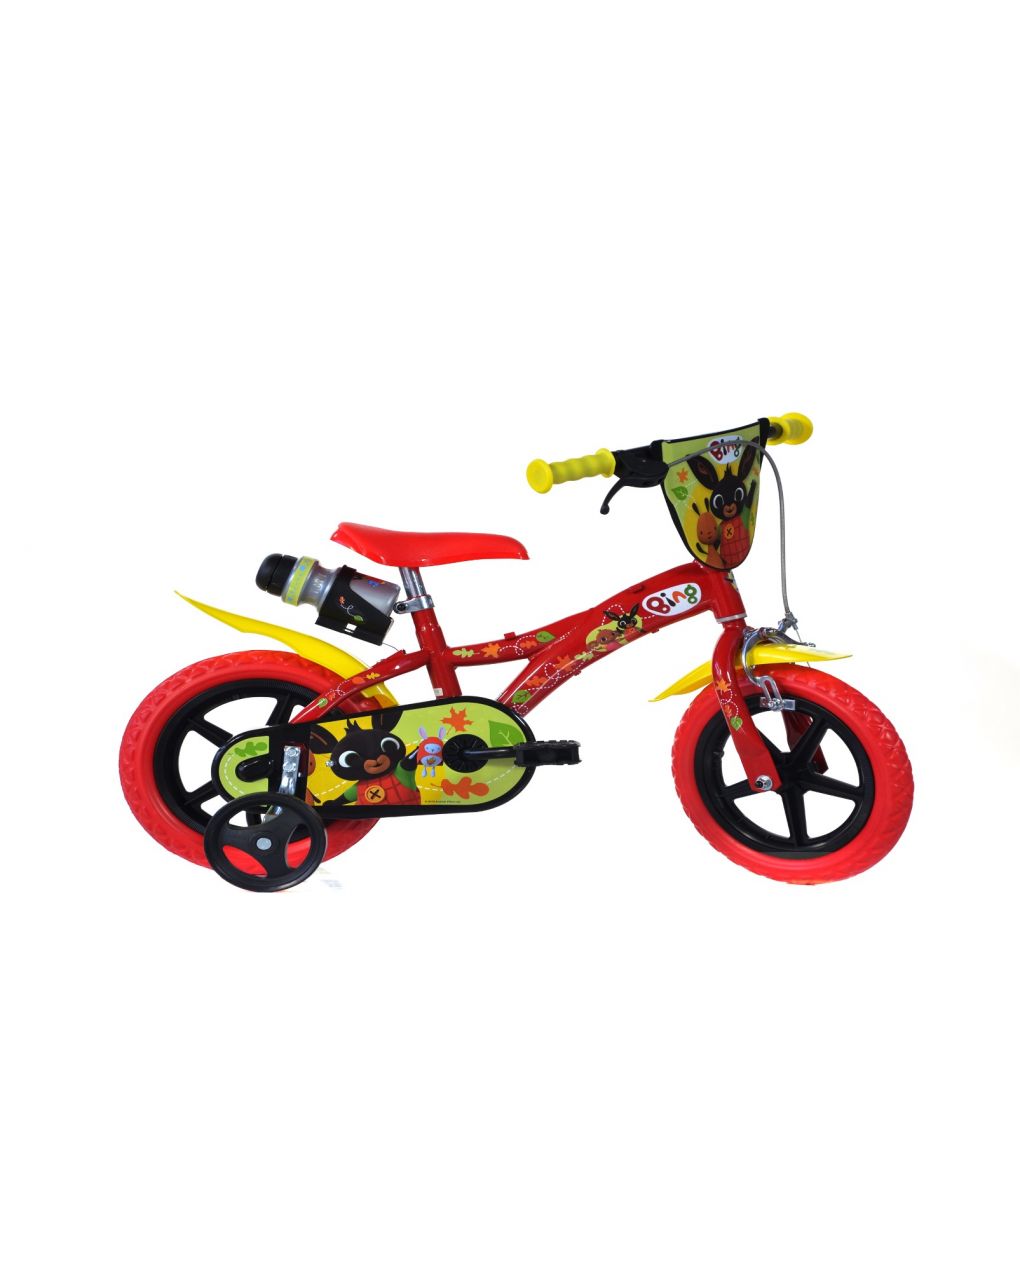 Bicicleta niño 12" 3-5 años - bing - Bing